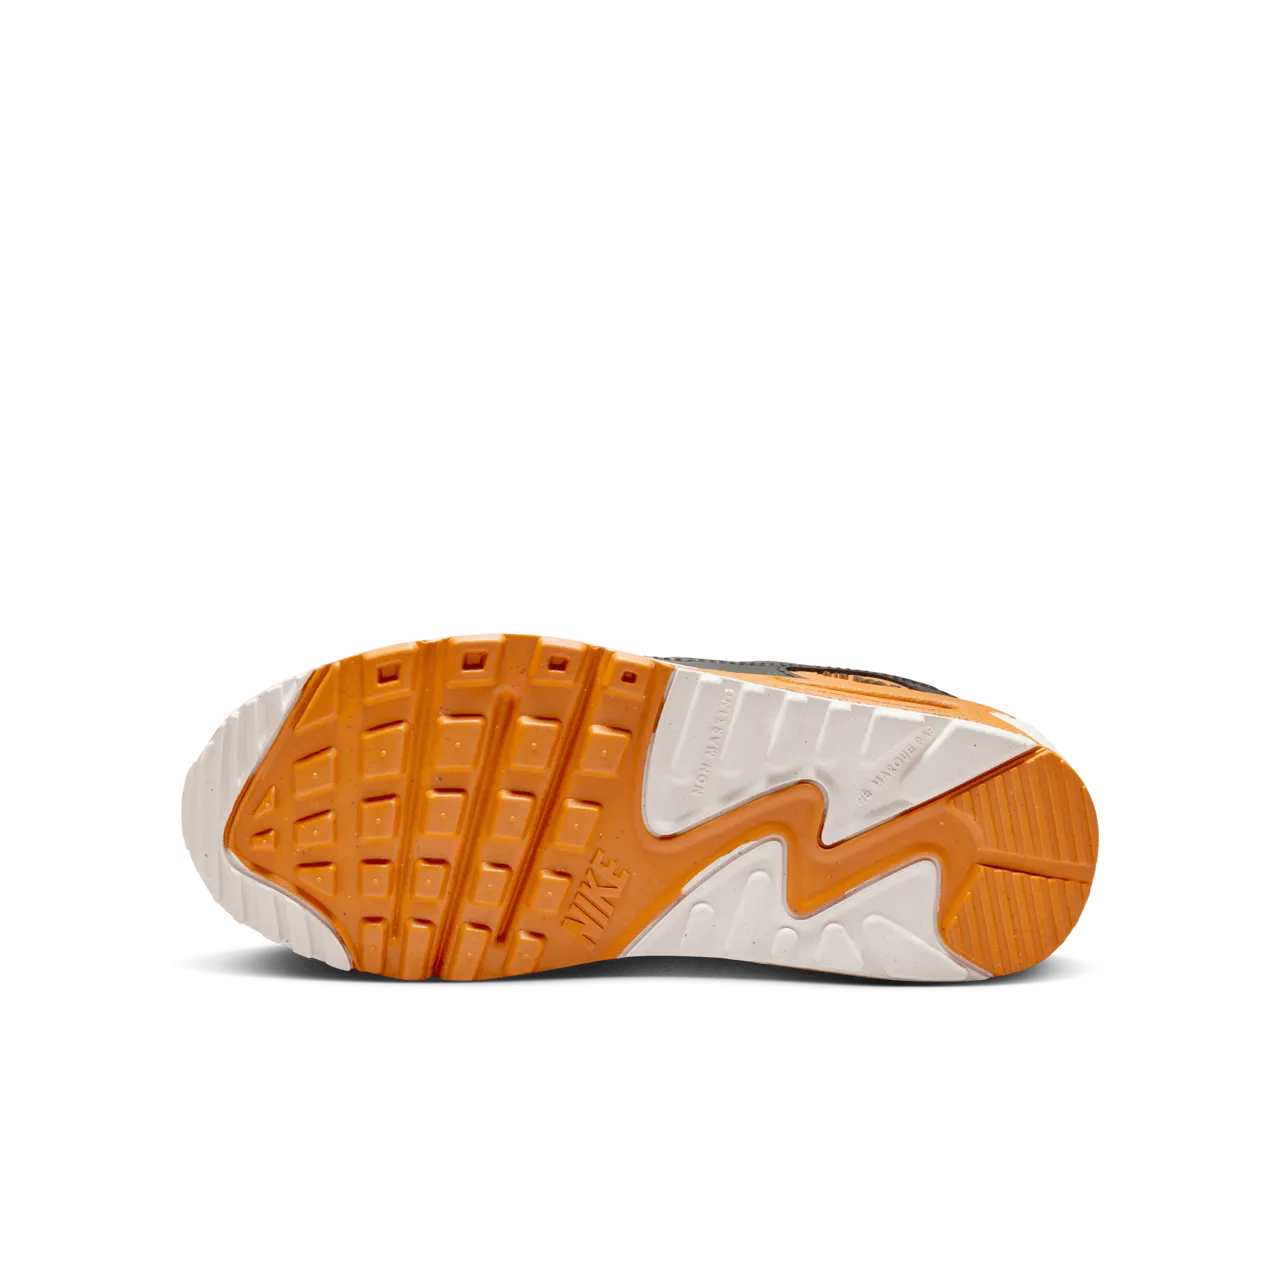 Nike Air Max 90 LTR Schuh für ältere Kinder - Grau